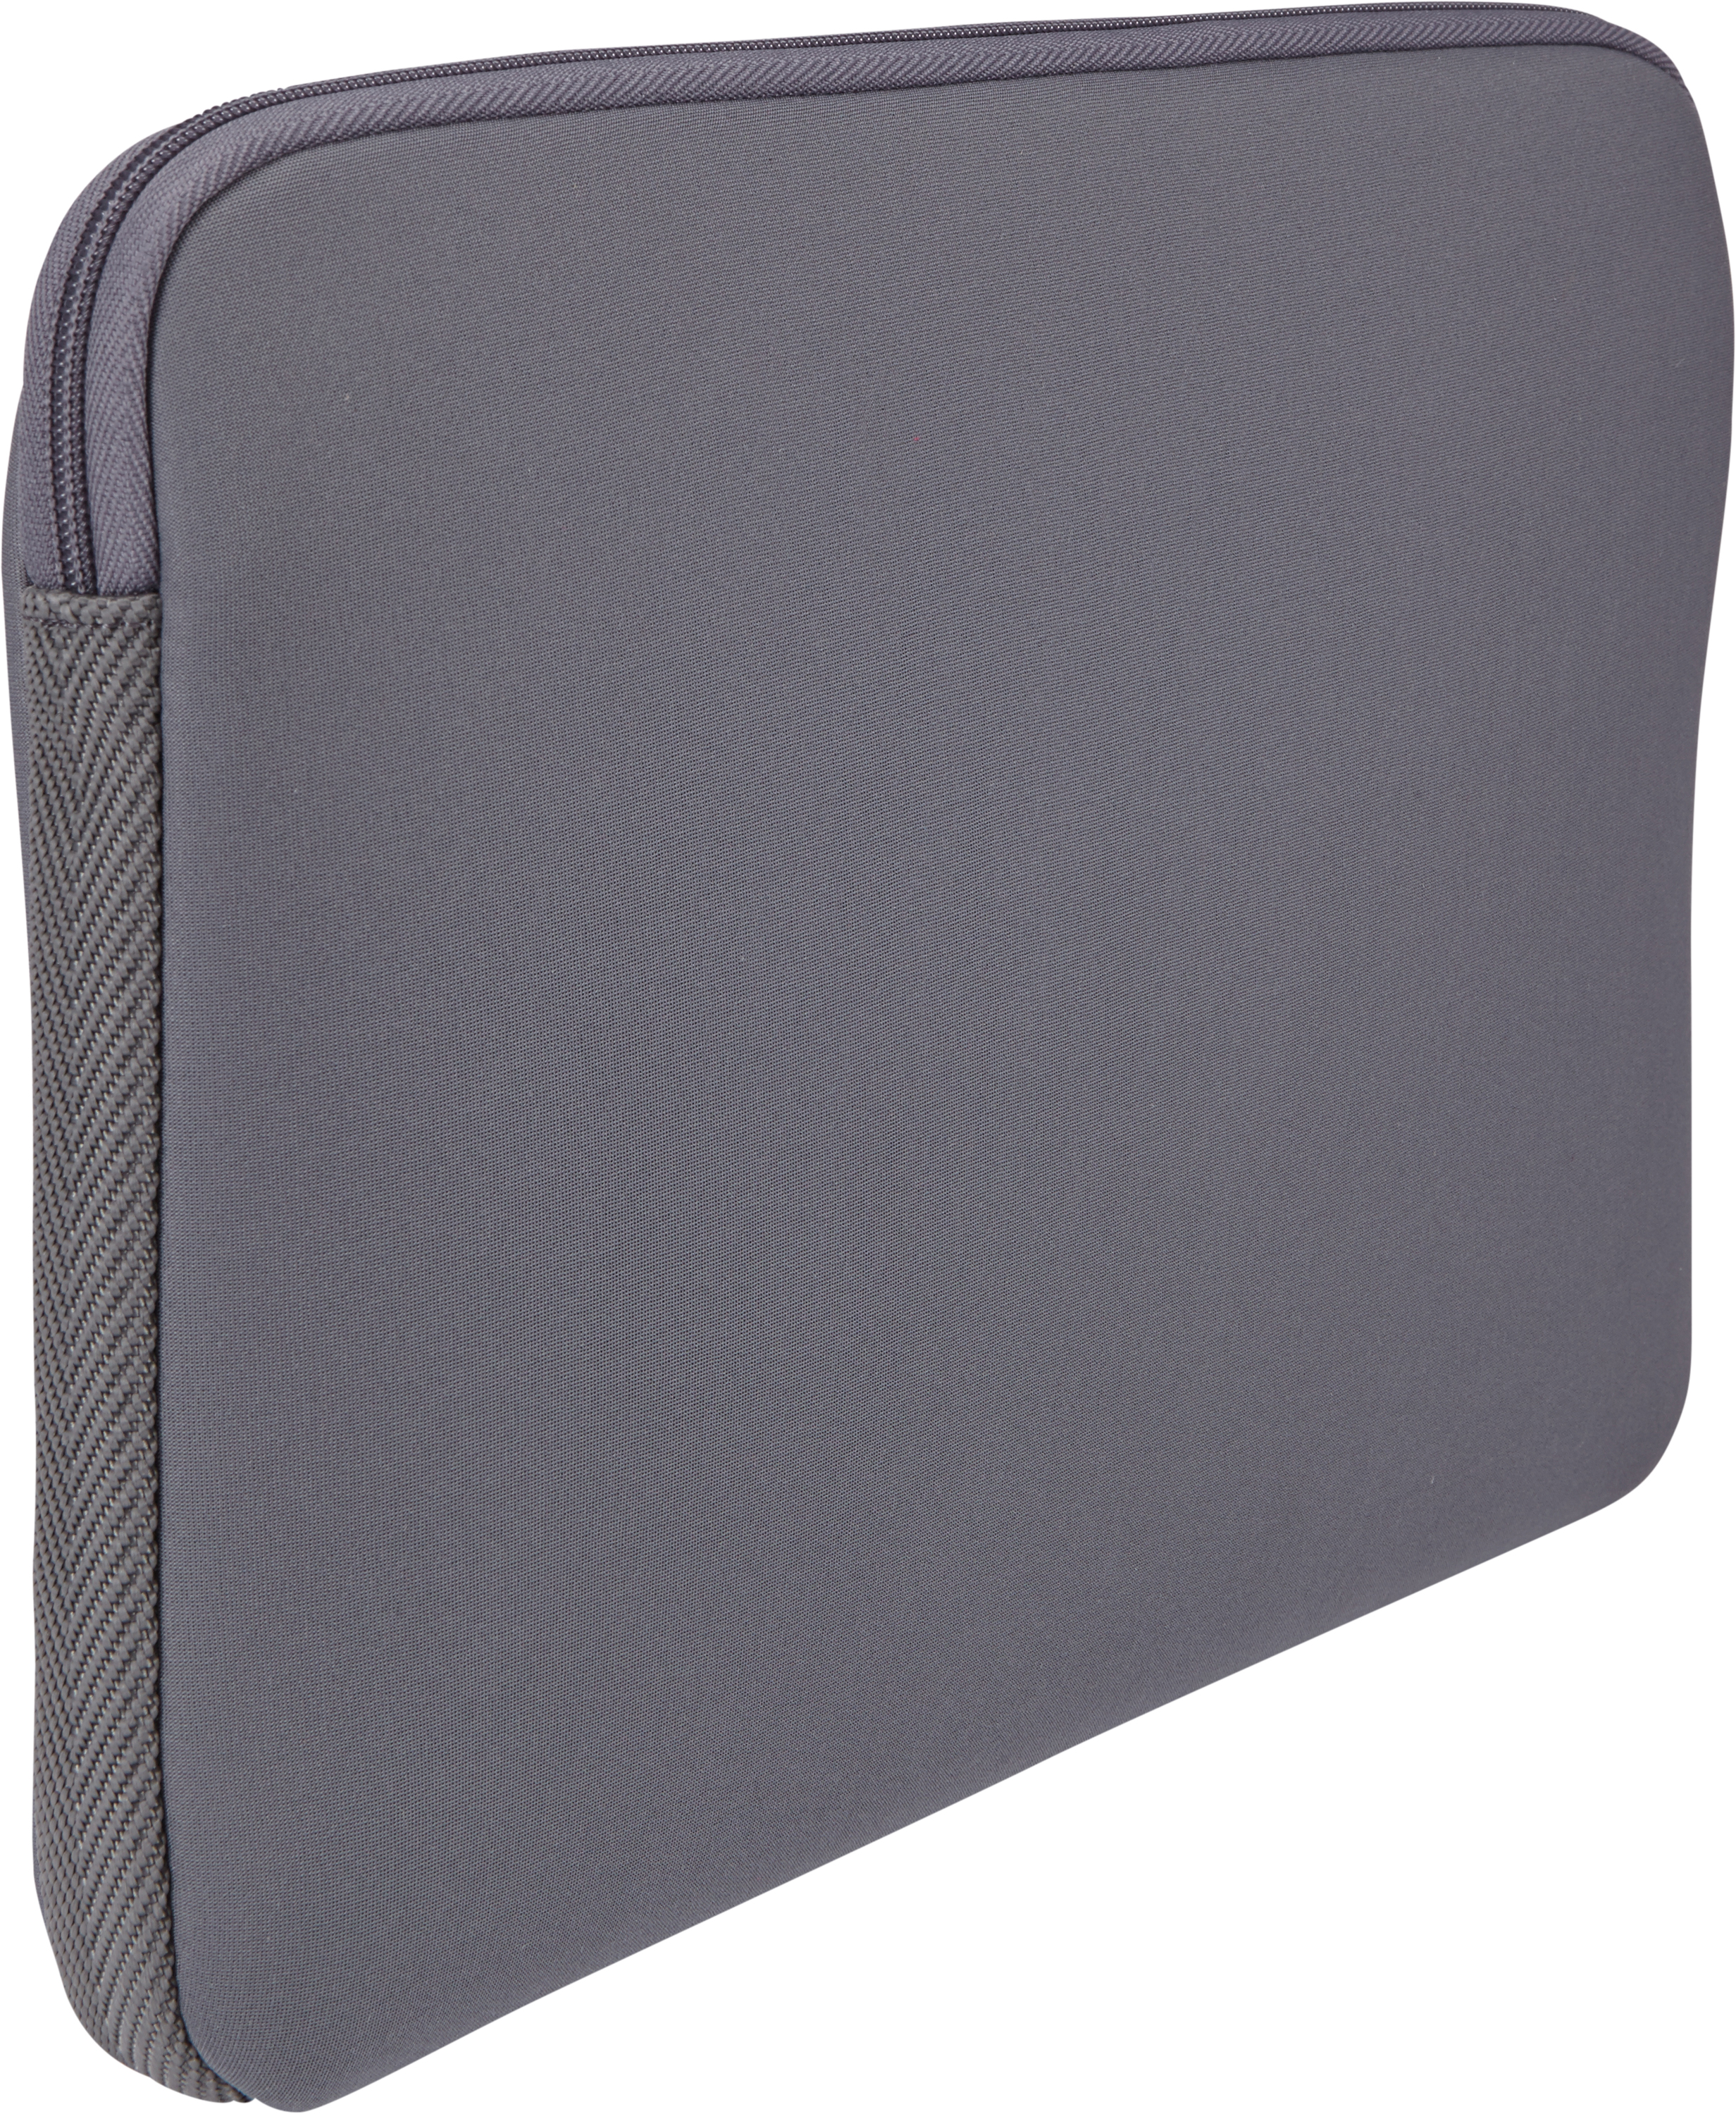 CASE LOGIC Notebooksleeve für Graphite EVA-Schaum, Universal Traditionel Sleeve